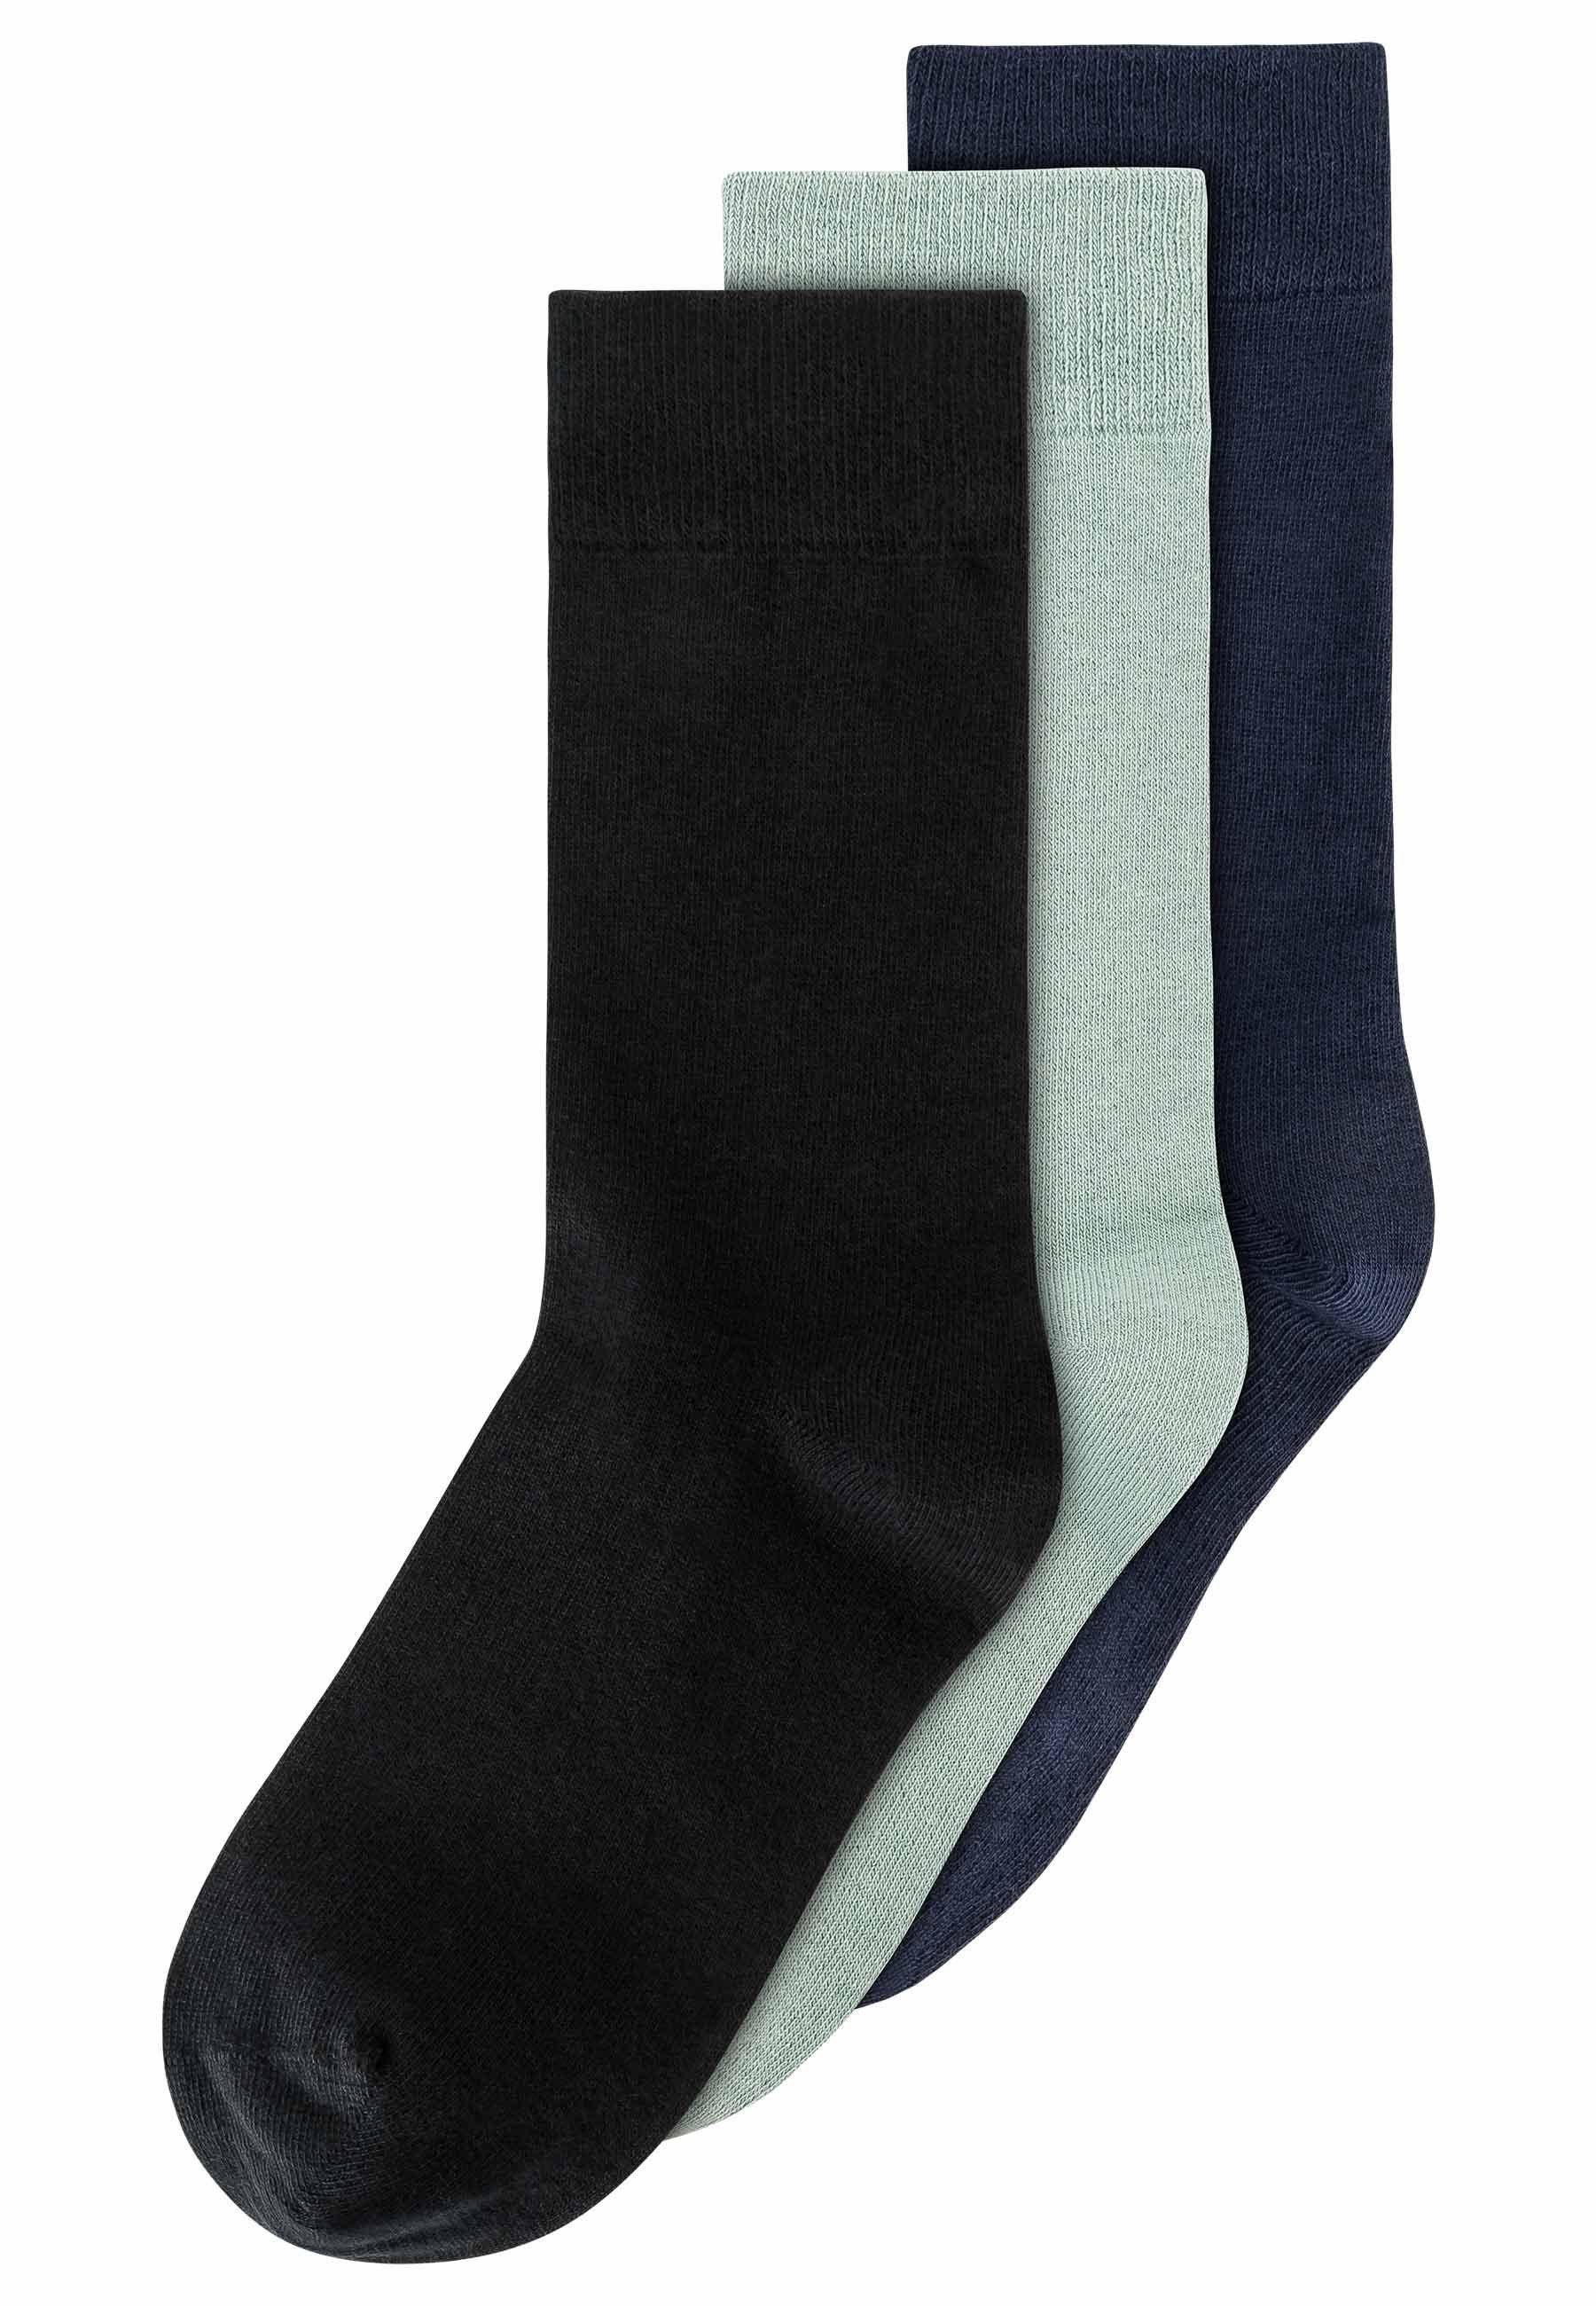 MELA Socken Socken 3er Pack Basic schwarz / mint / navy